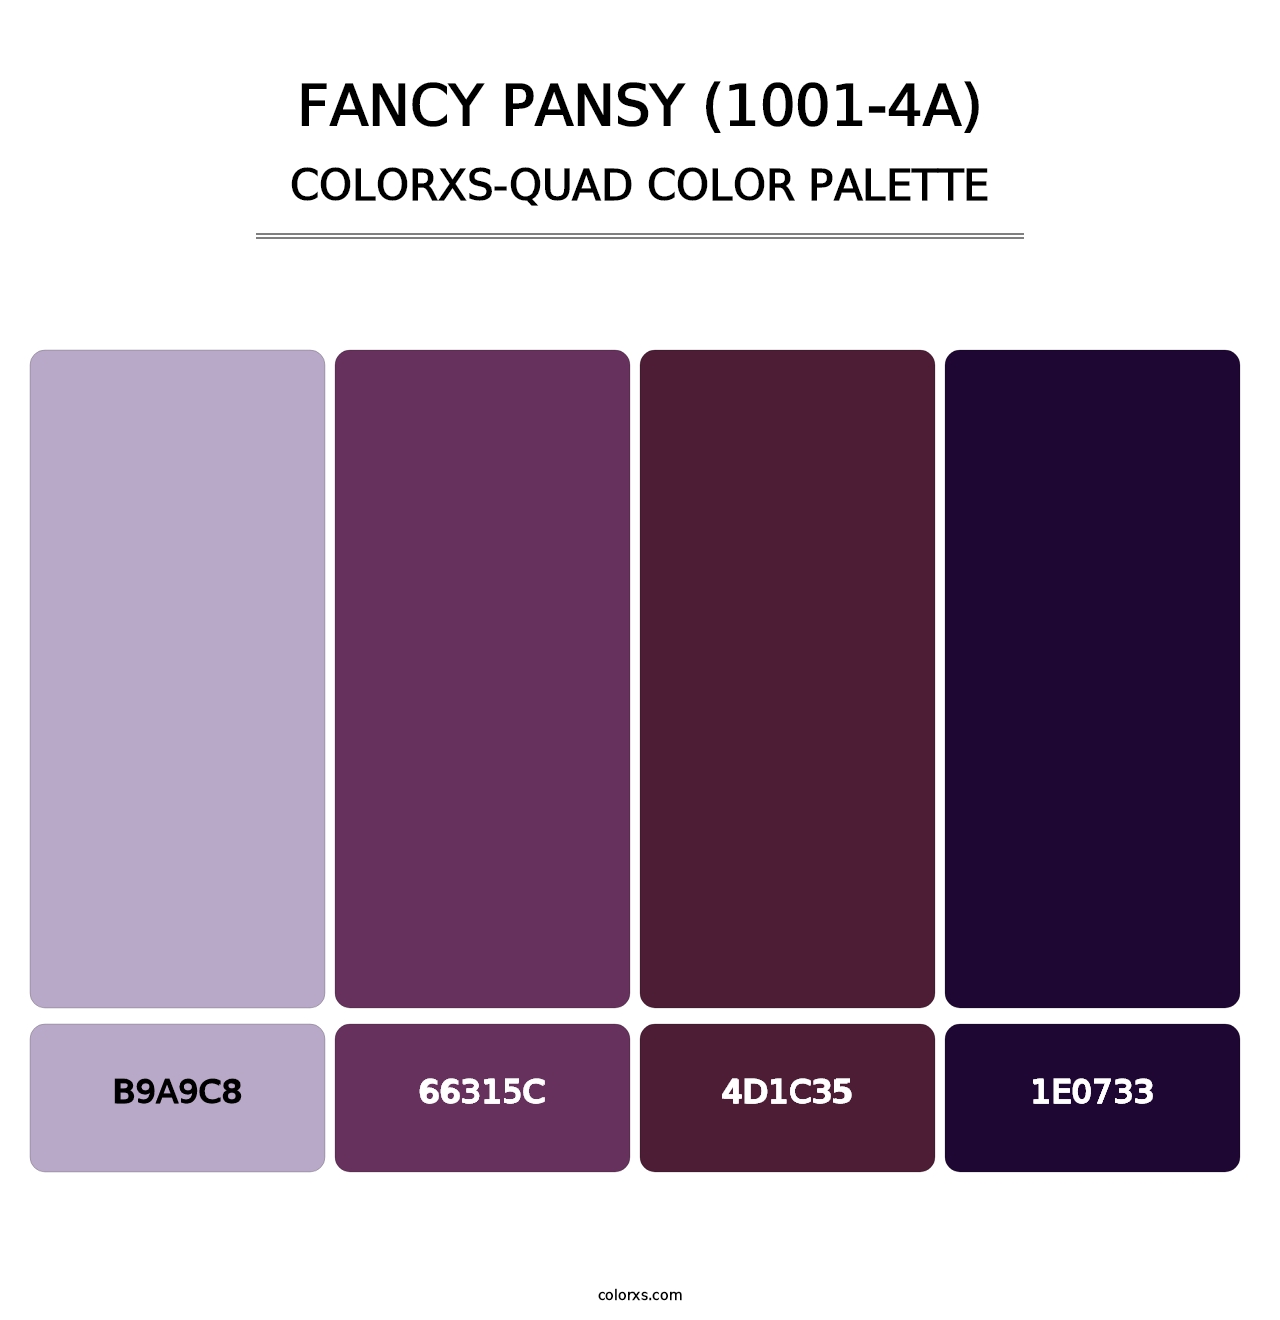 Fancy Pansy (1001-4A) - Colorxs Quad Palette